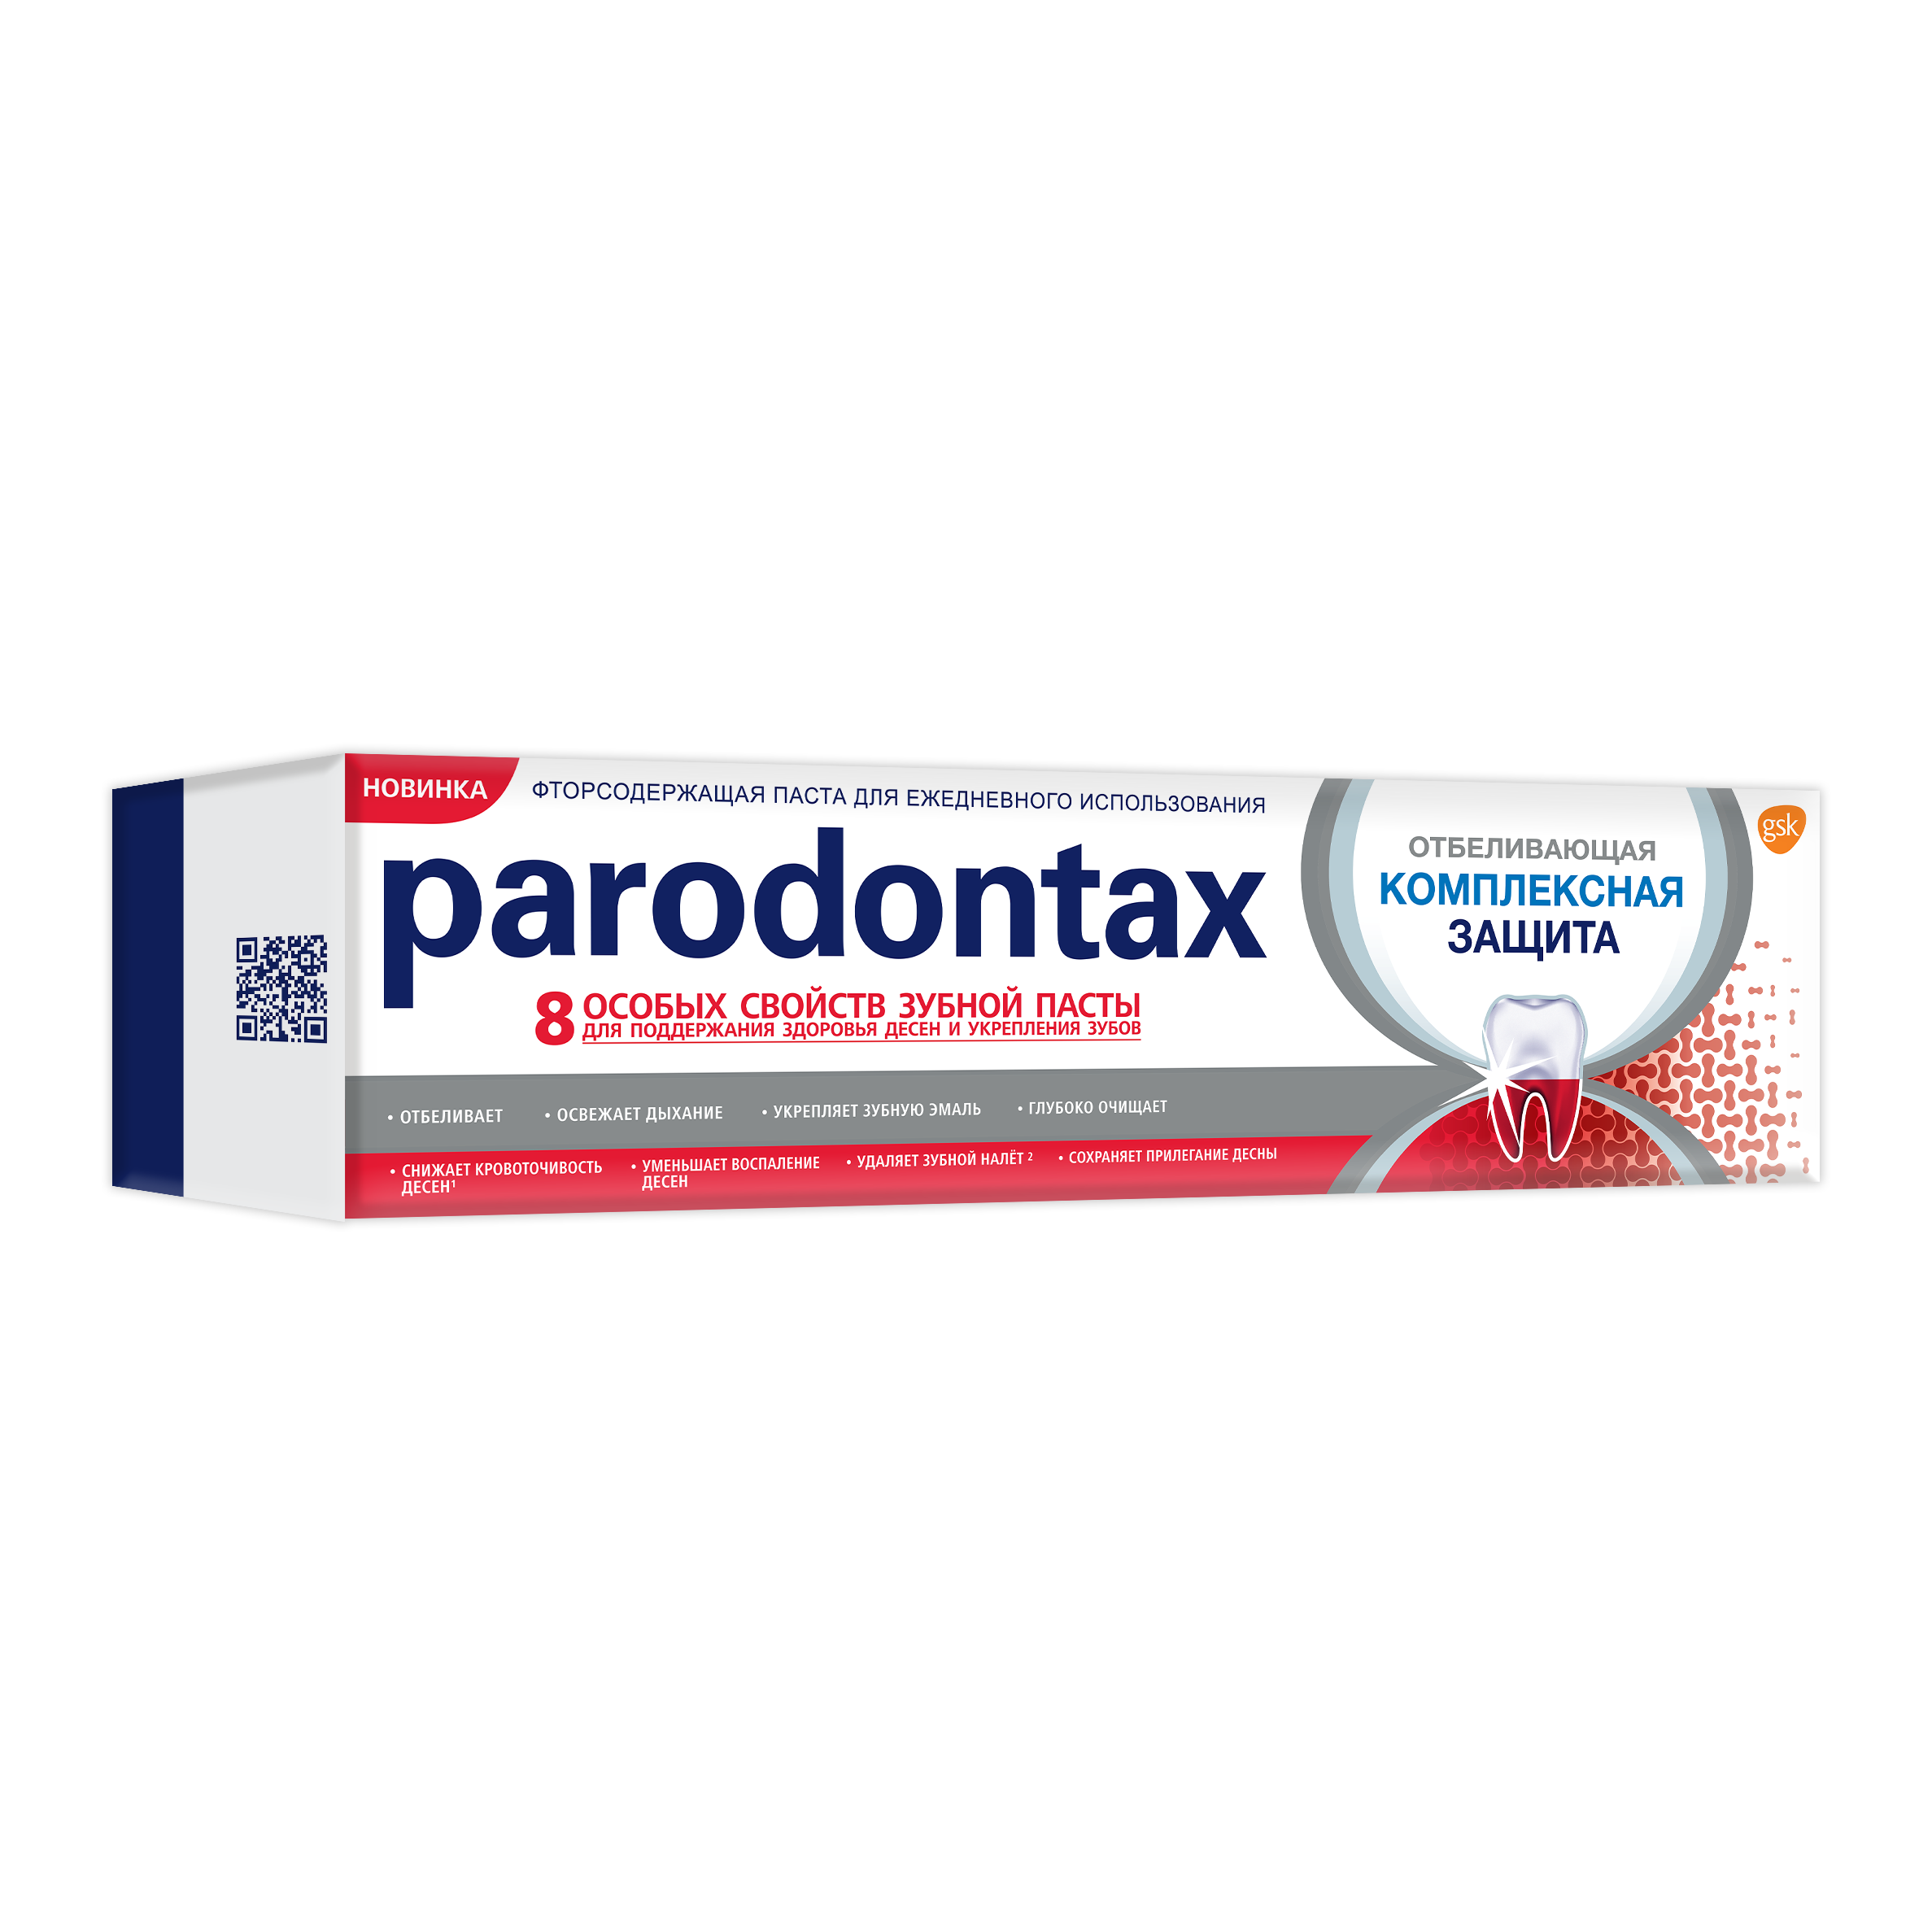 Зубная паста Parodontax Комплексная защита Отбеливающая, 75 мл - фото 4